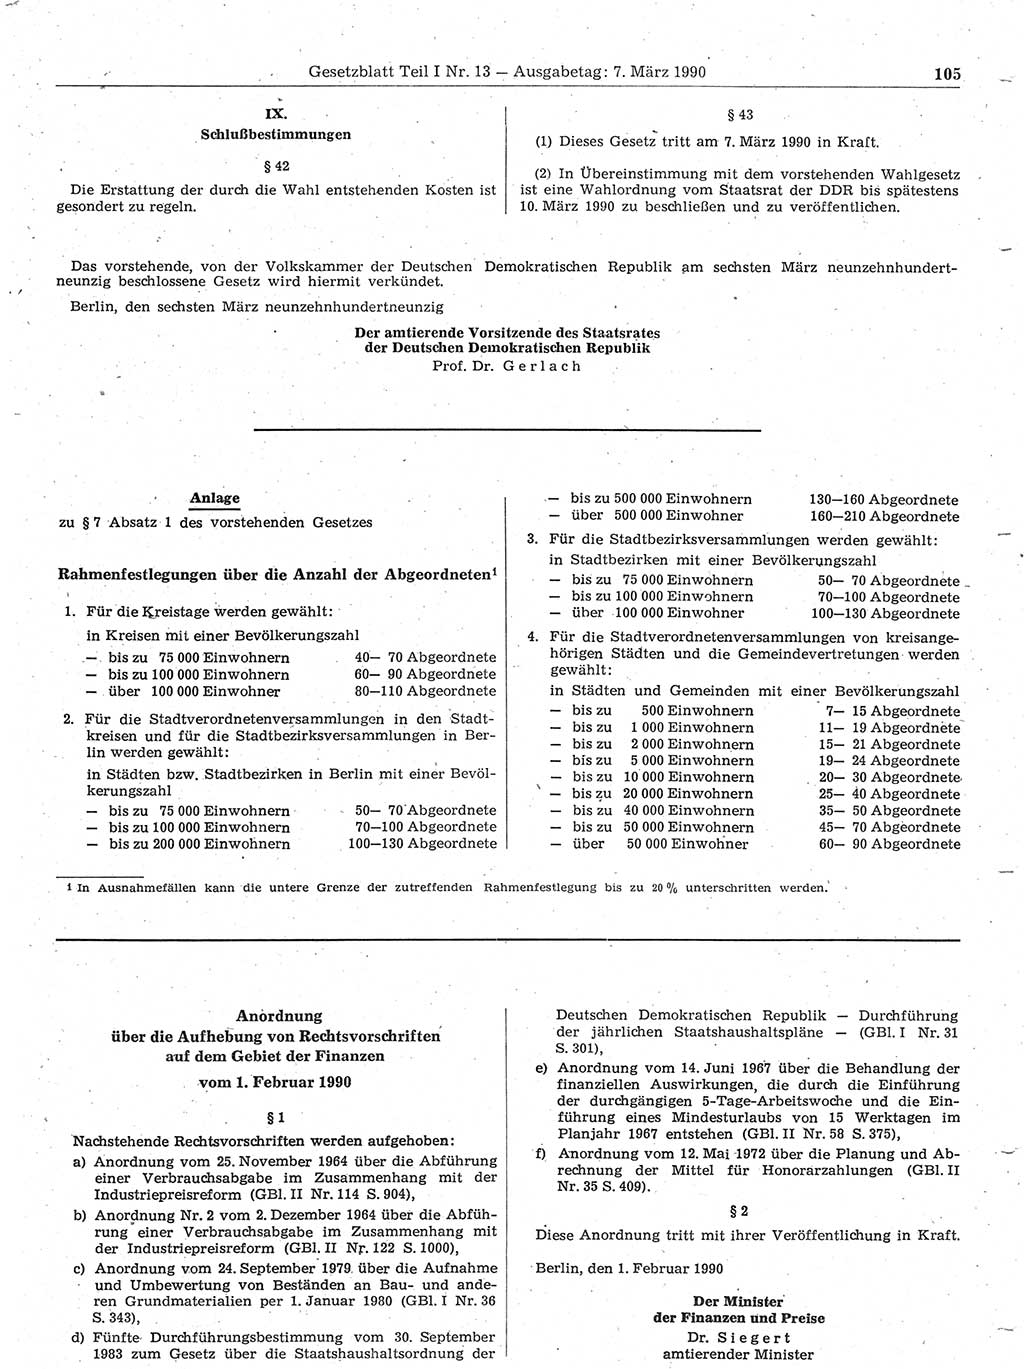 Gesetzblatt (GBl.) der Deutschen Demokratischen Republik (DDR) Teil Ⅰ 1990, Seite 105 (GBl. DDR Ⅰ 1990, S. 105)